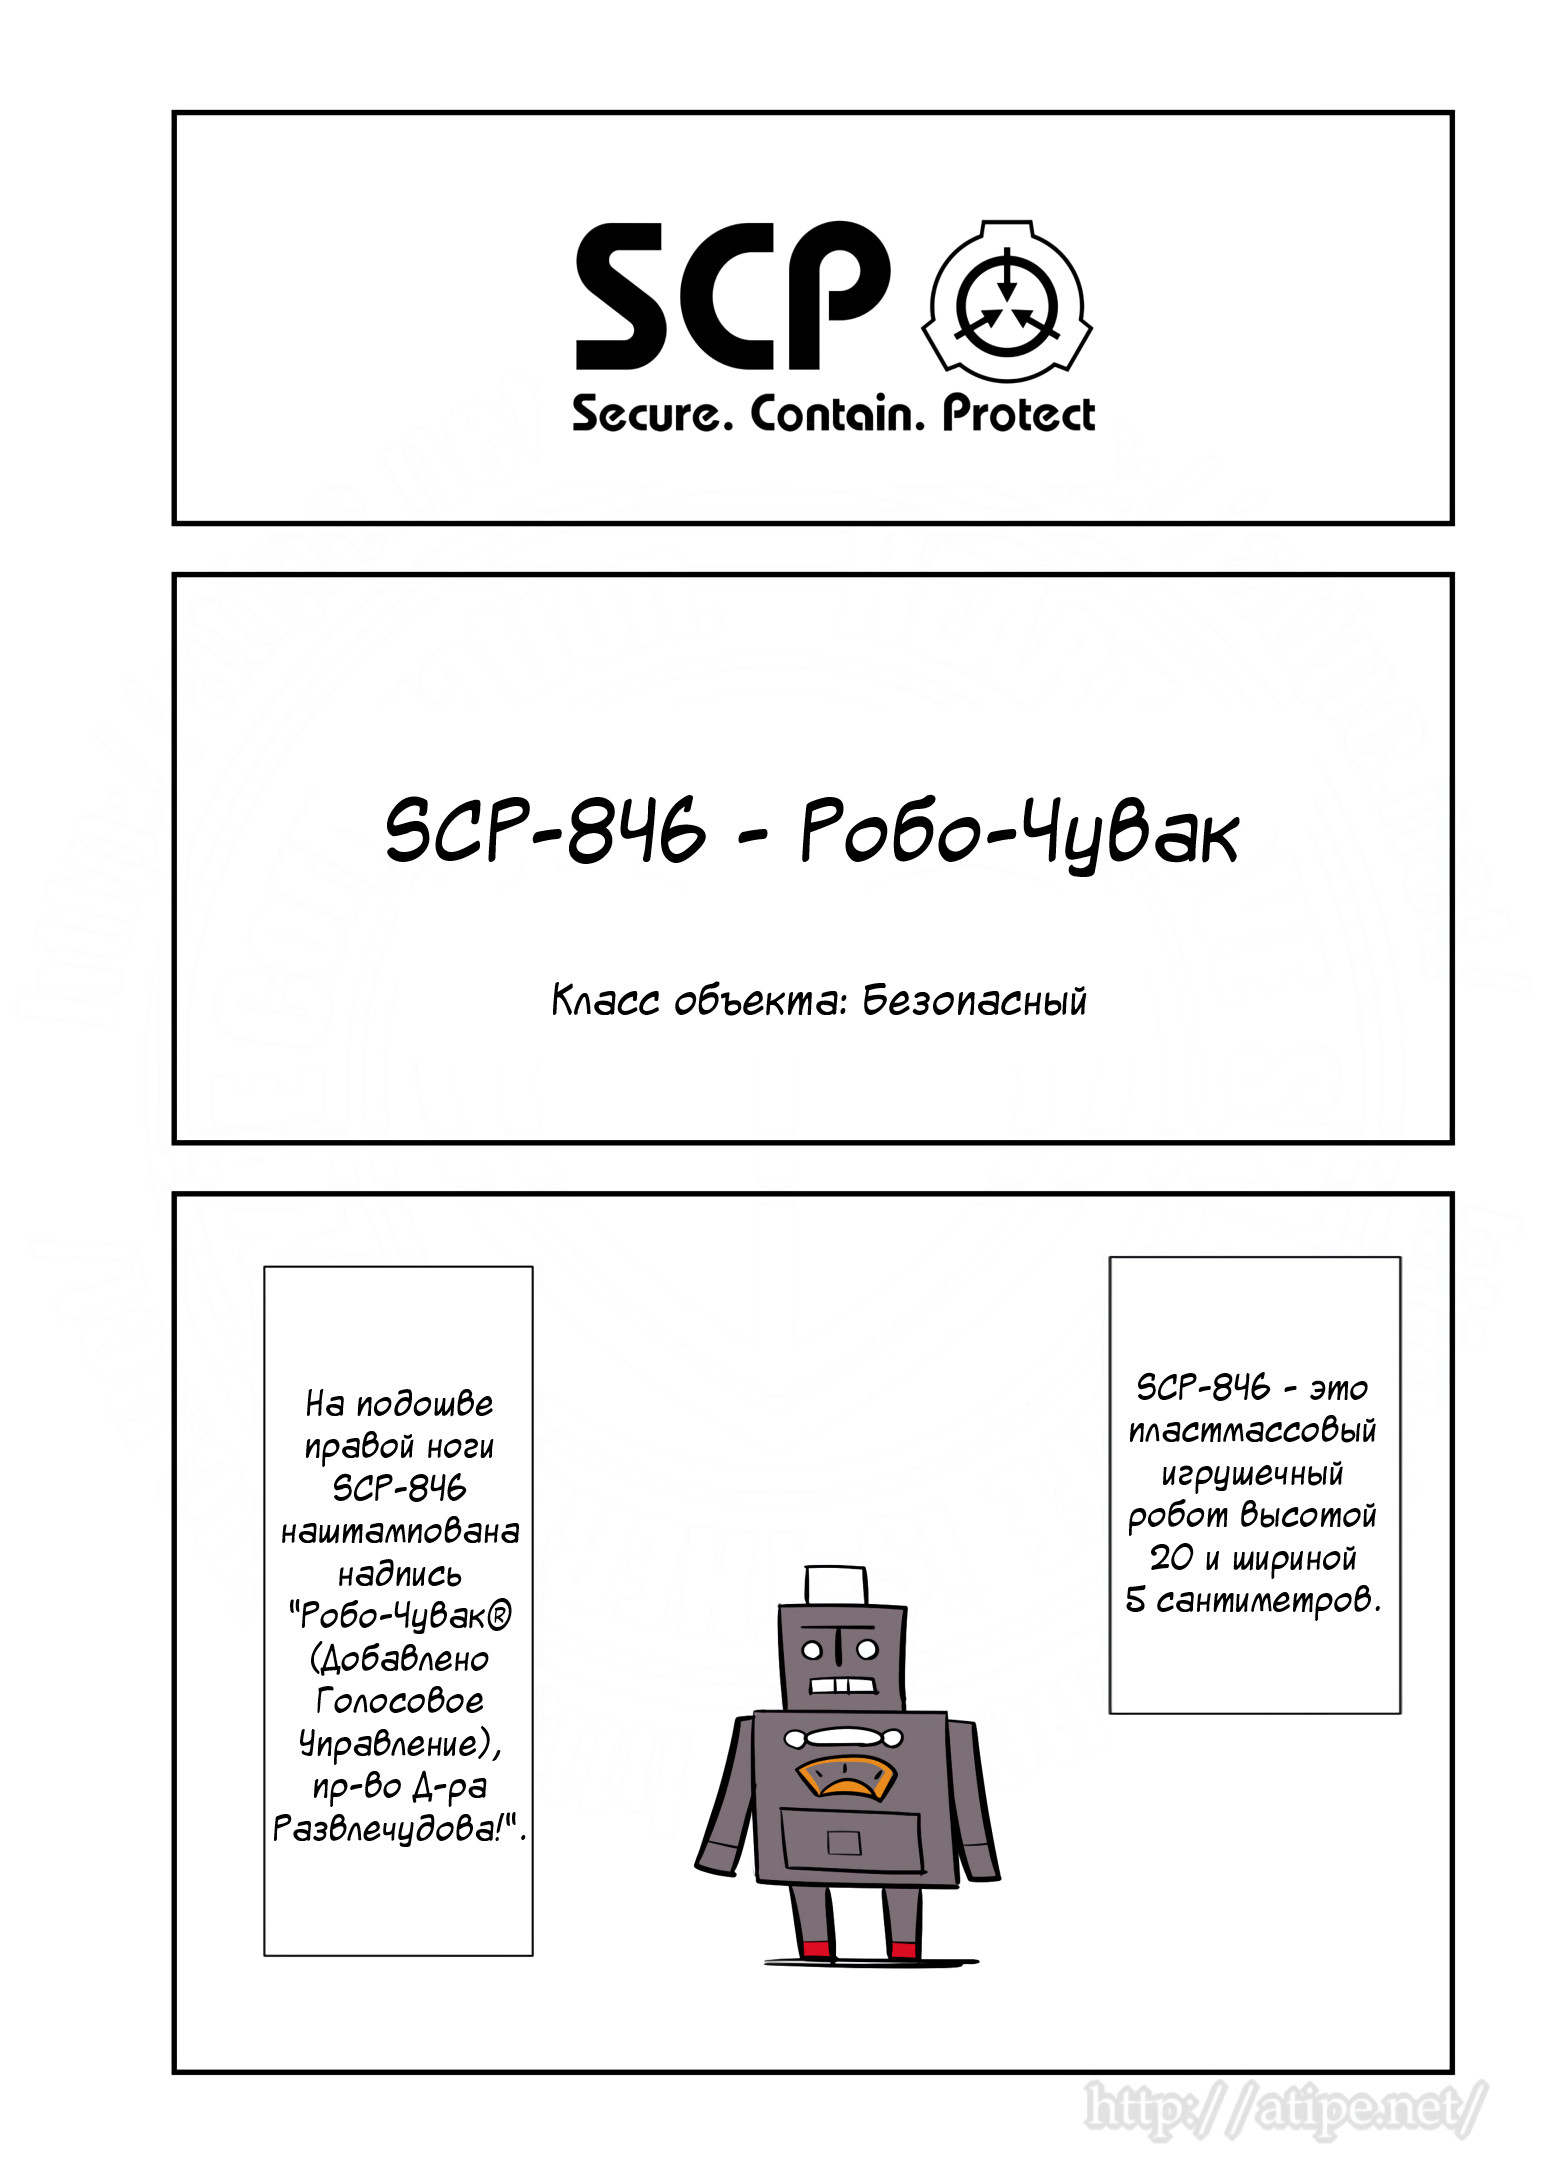 Упрощенный SCP 1 - 94 SCP-846 - Робо-Чувак